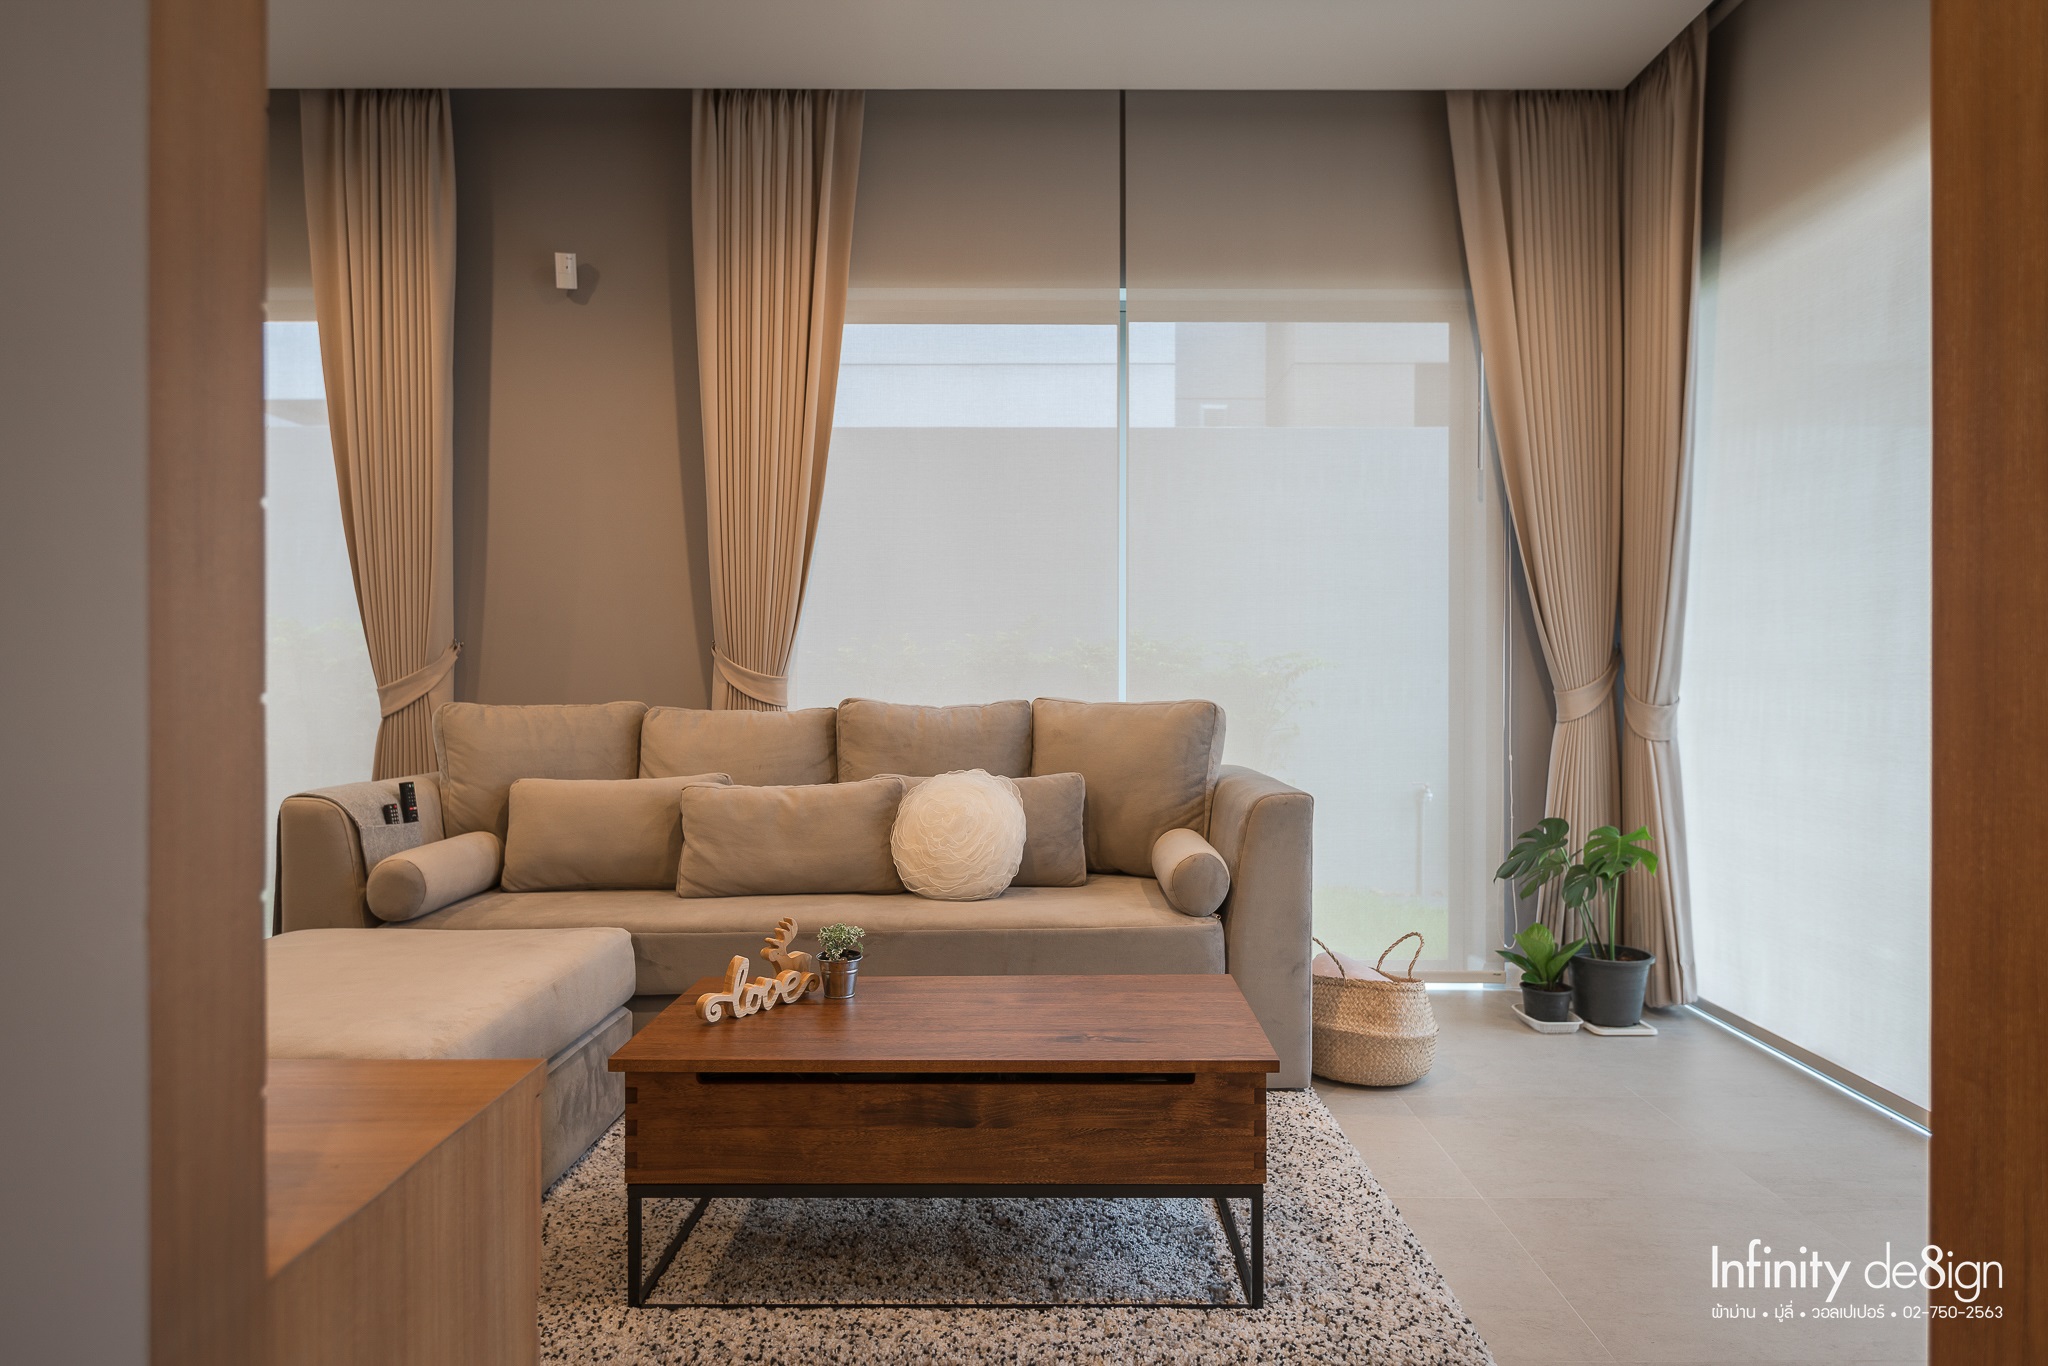 ไอเดียแต่งห้องด้วยม่านม้วน Sunscreen : ห้องนั่งเล่น Gray & Brown Style